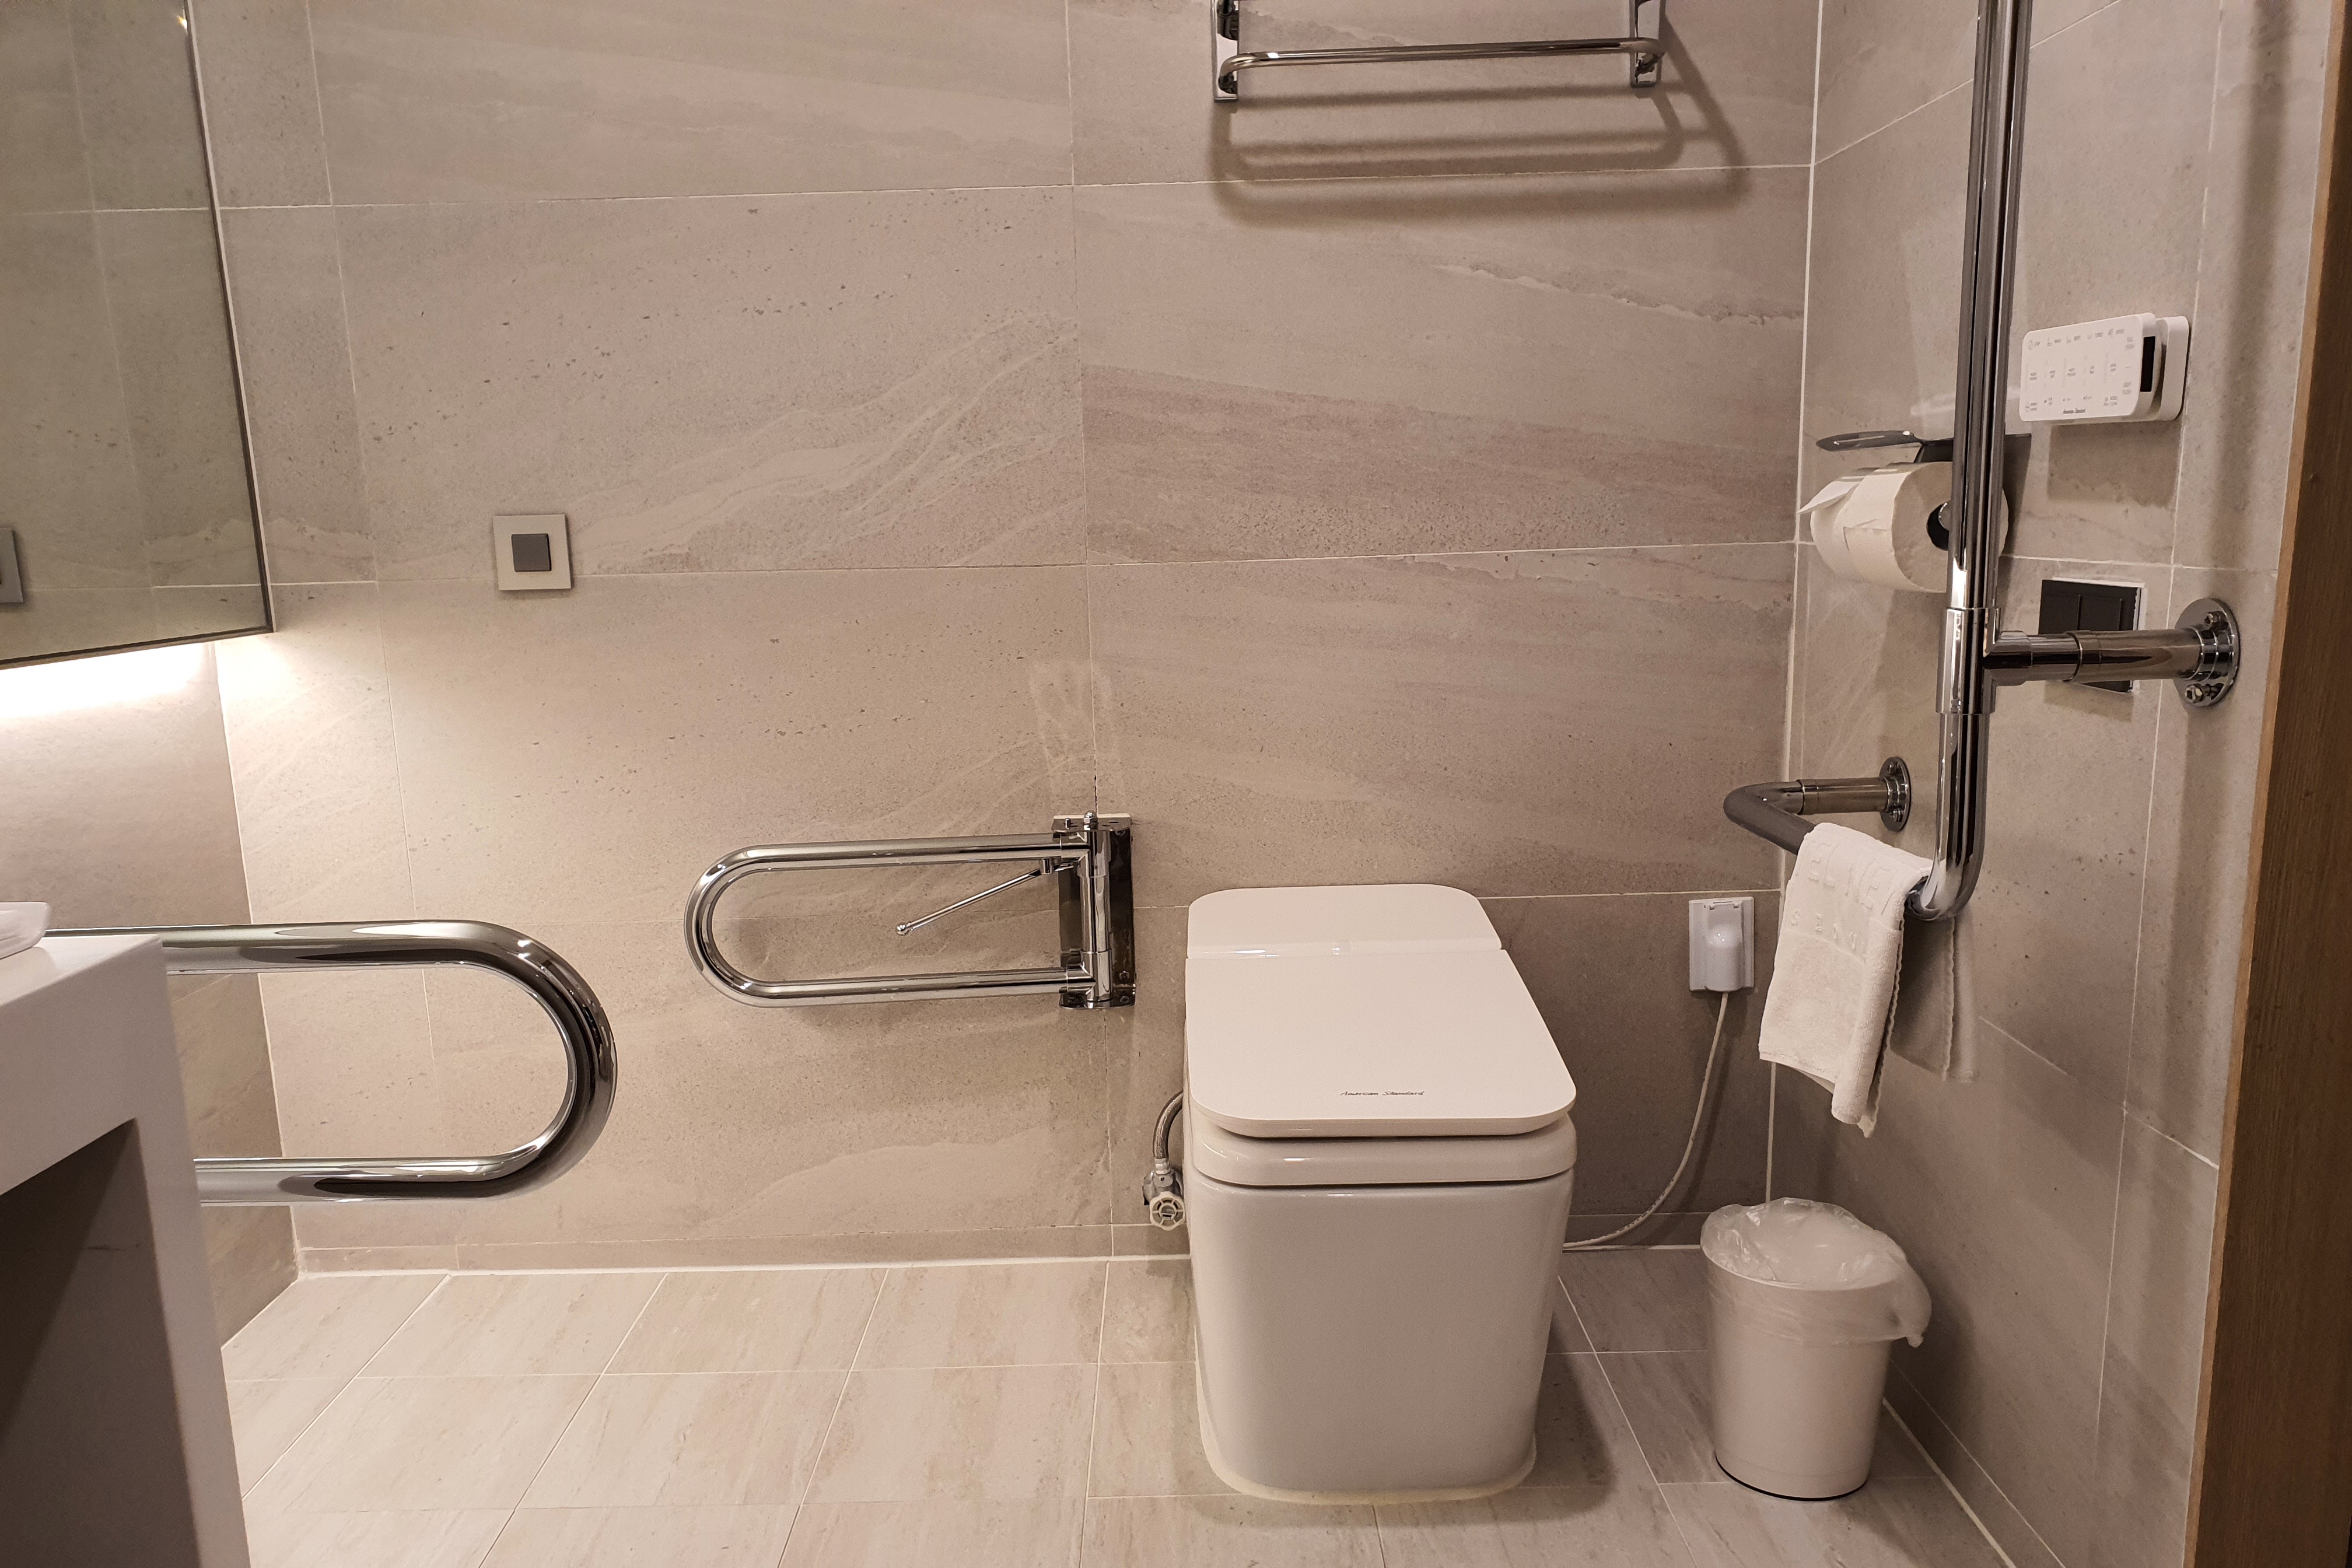 장애인화장실0 : 안전 손잡이가 설치된 깔끔한 장애인 화장실